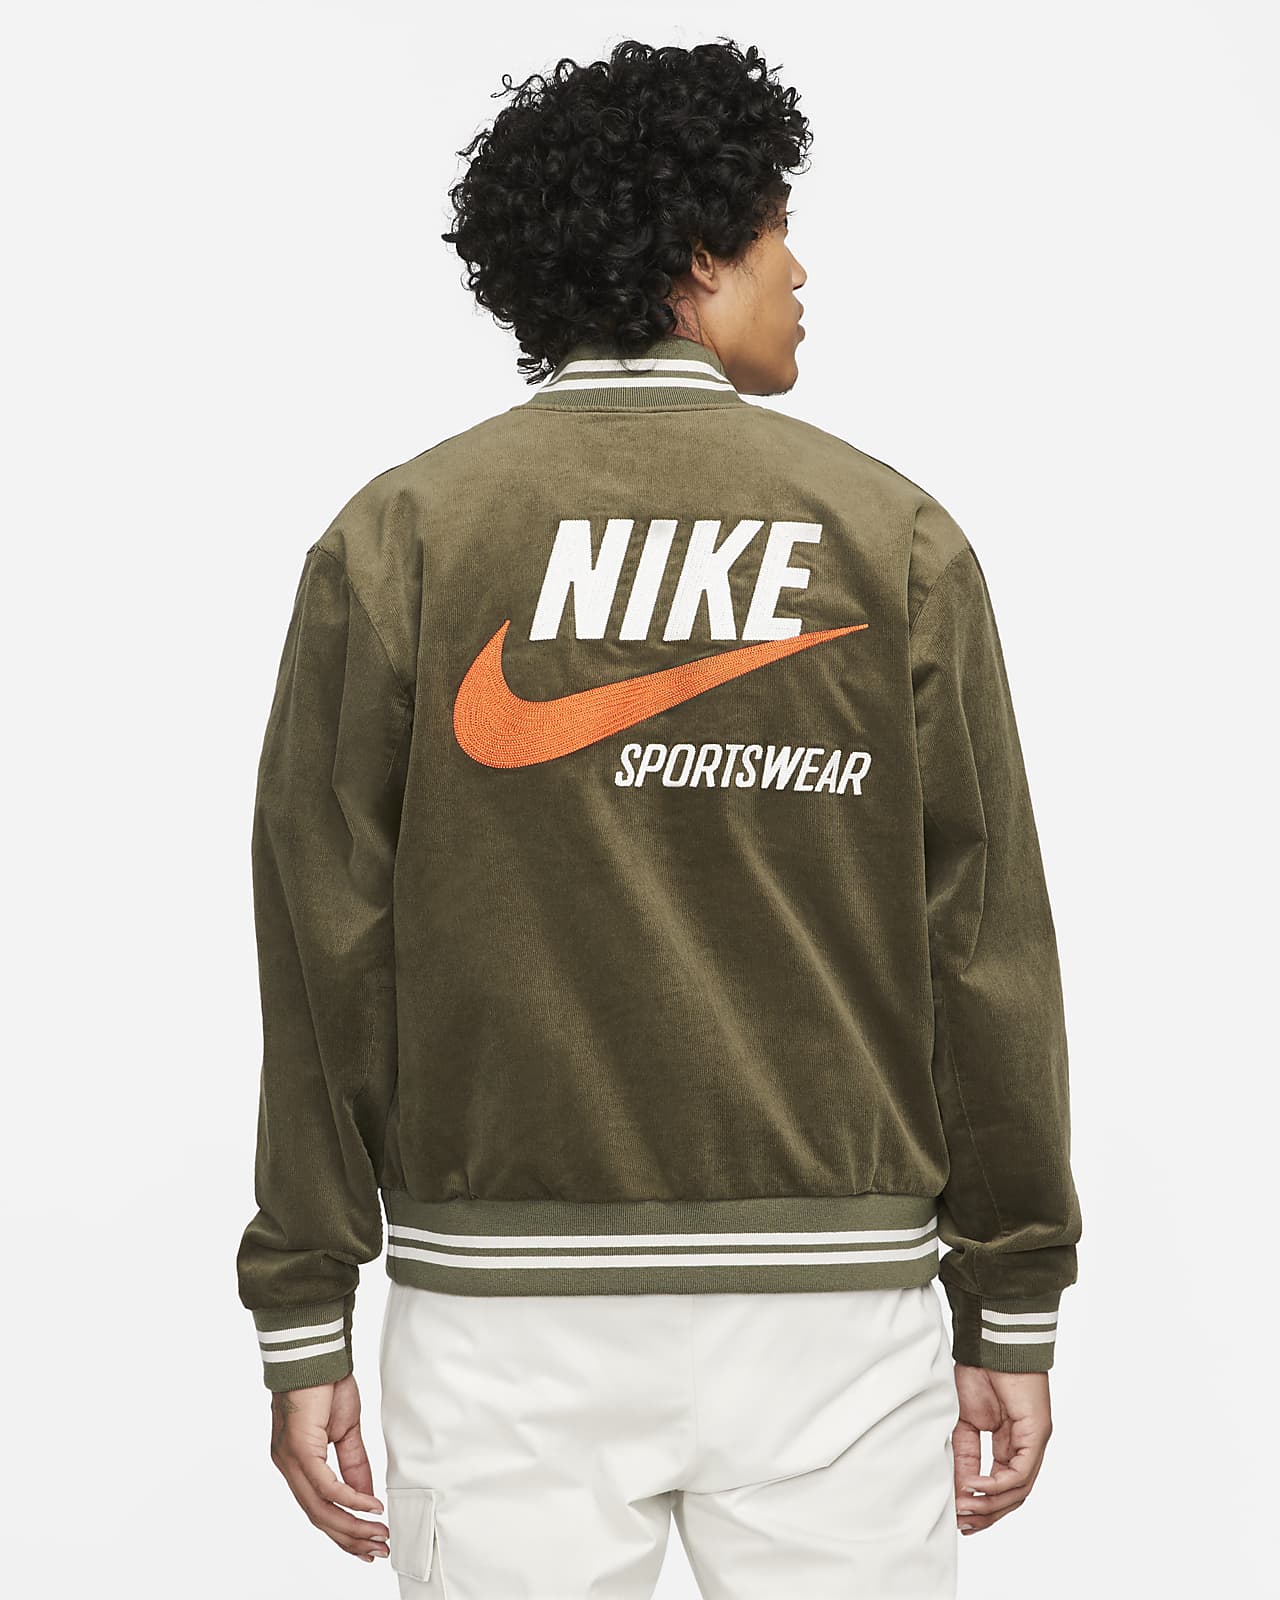 ik heb het gevonden Verouderd hebzuchtig Nike Sportswear Trend Men's Bomber Jacket. Nike LU